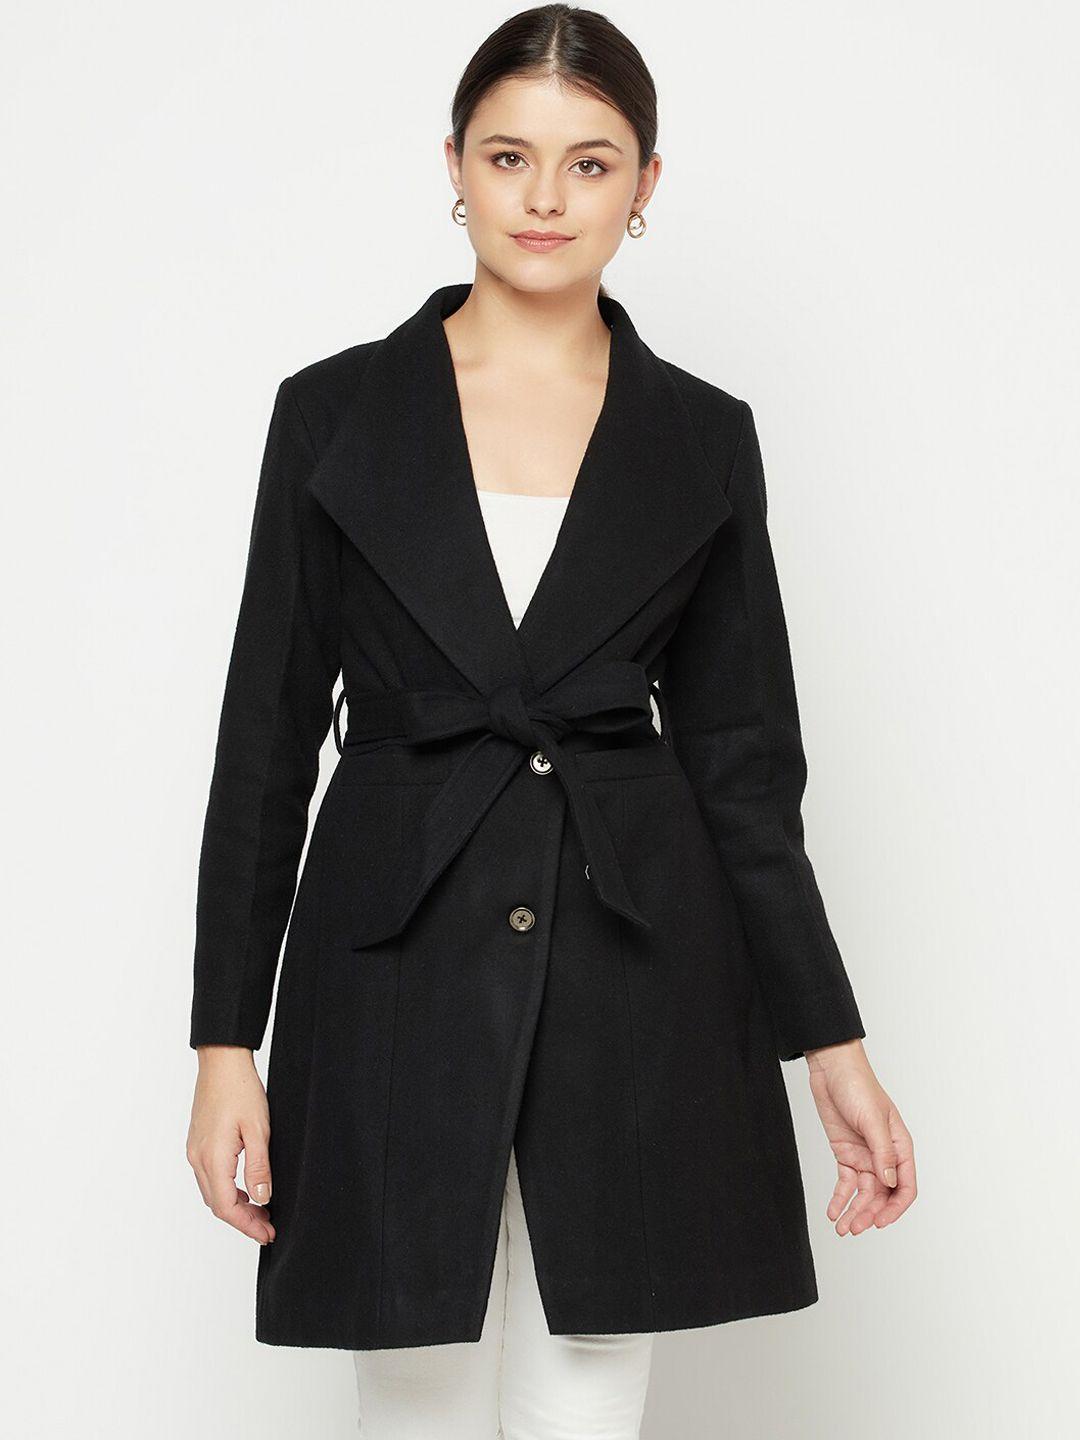 owncraft women black solid wool overcoat